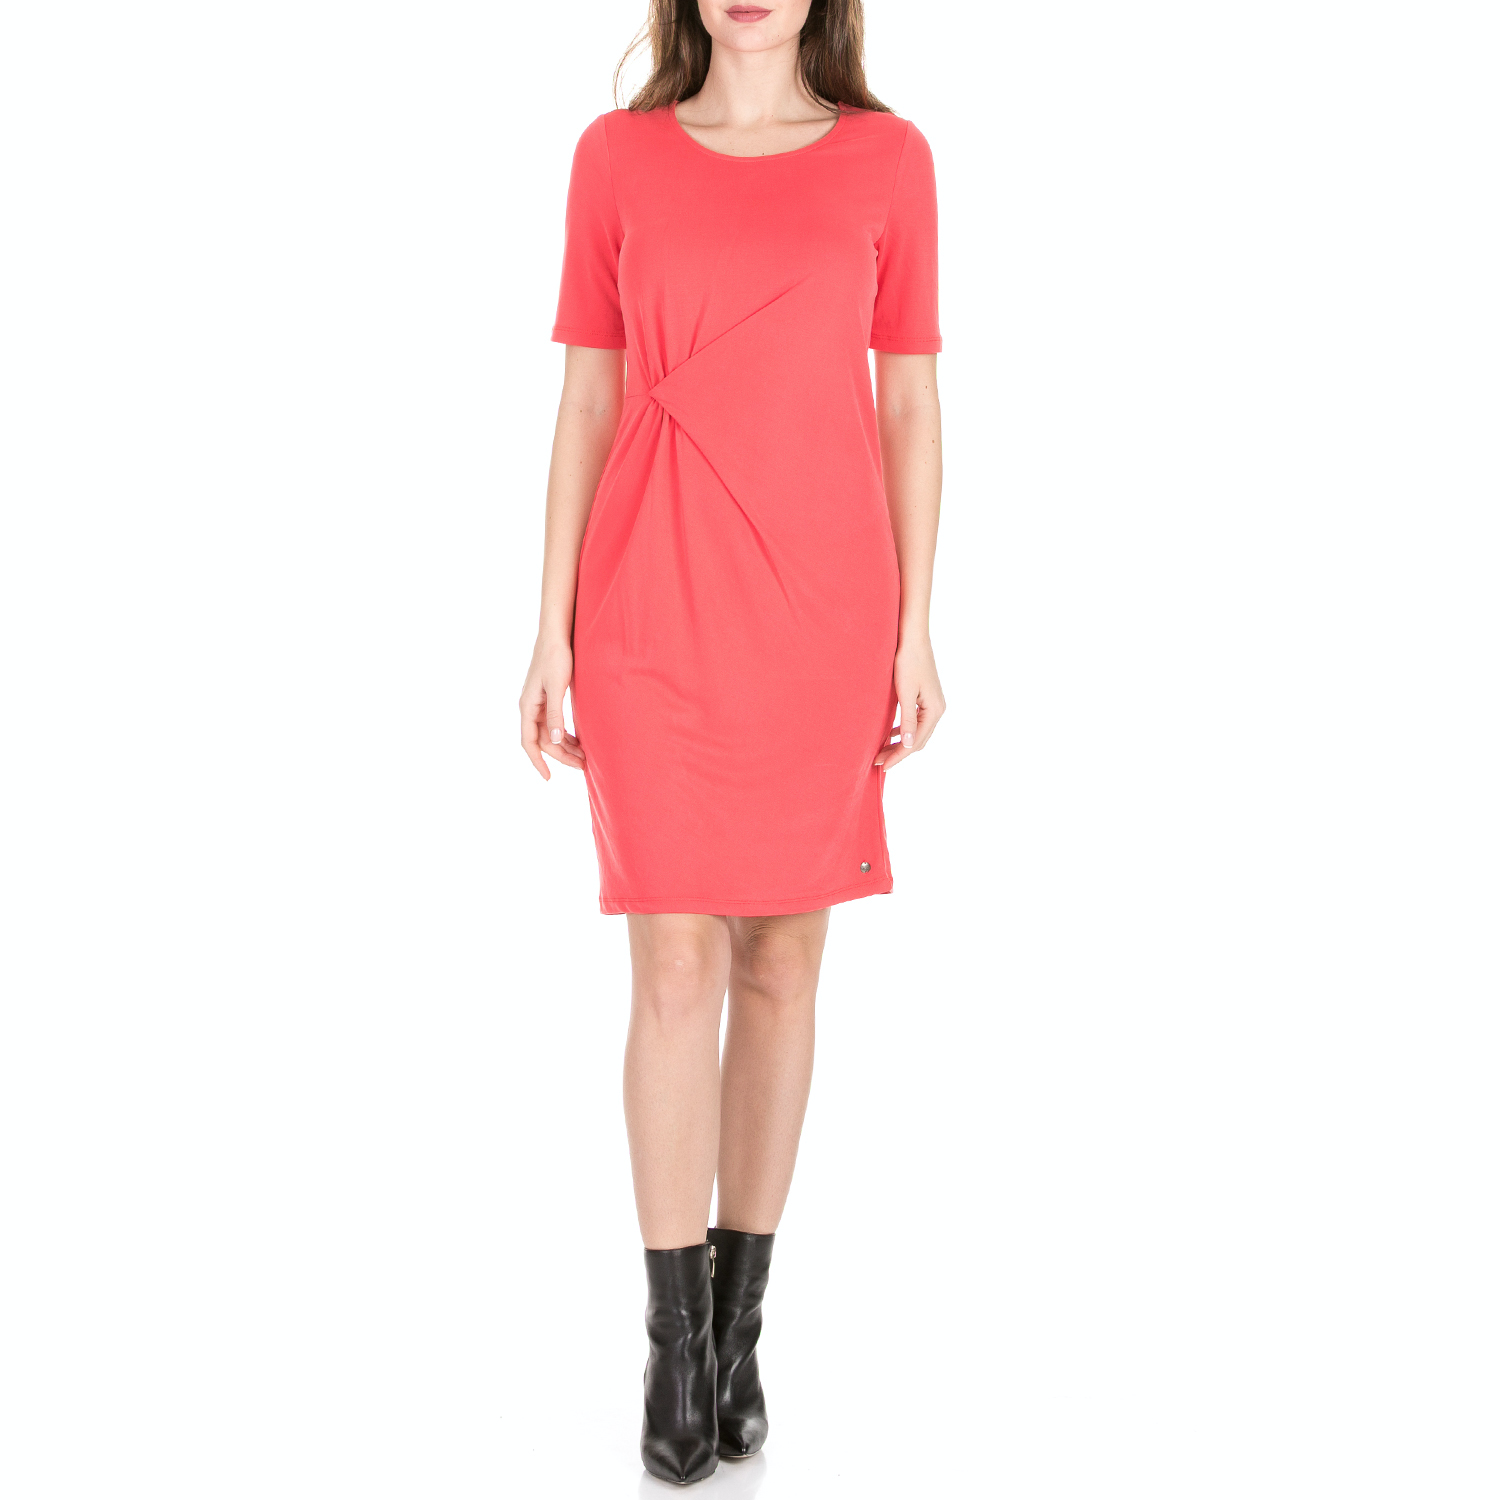 Γυναικεία/Ρούχα/Φορέματα/Μίνι GARCIA JEANS - Γυναικείο mini φόρεμα GARCIA JEANS κόκκινο